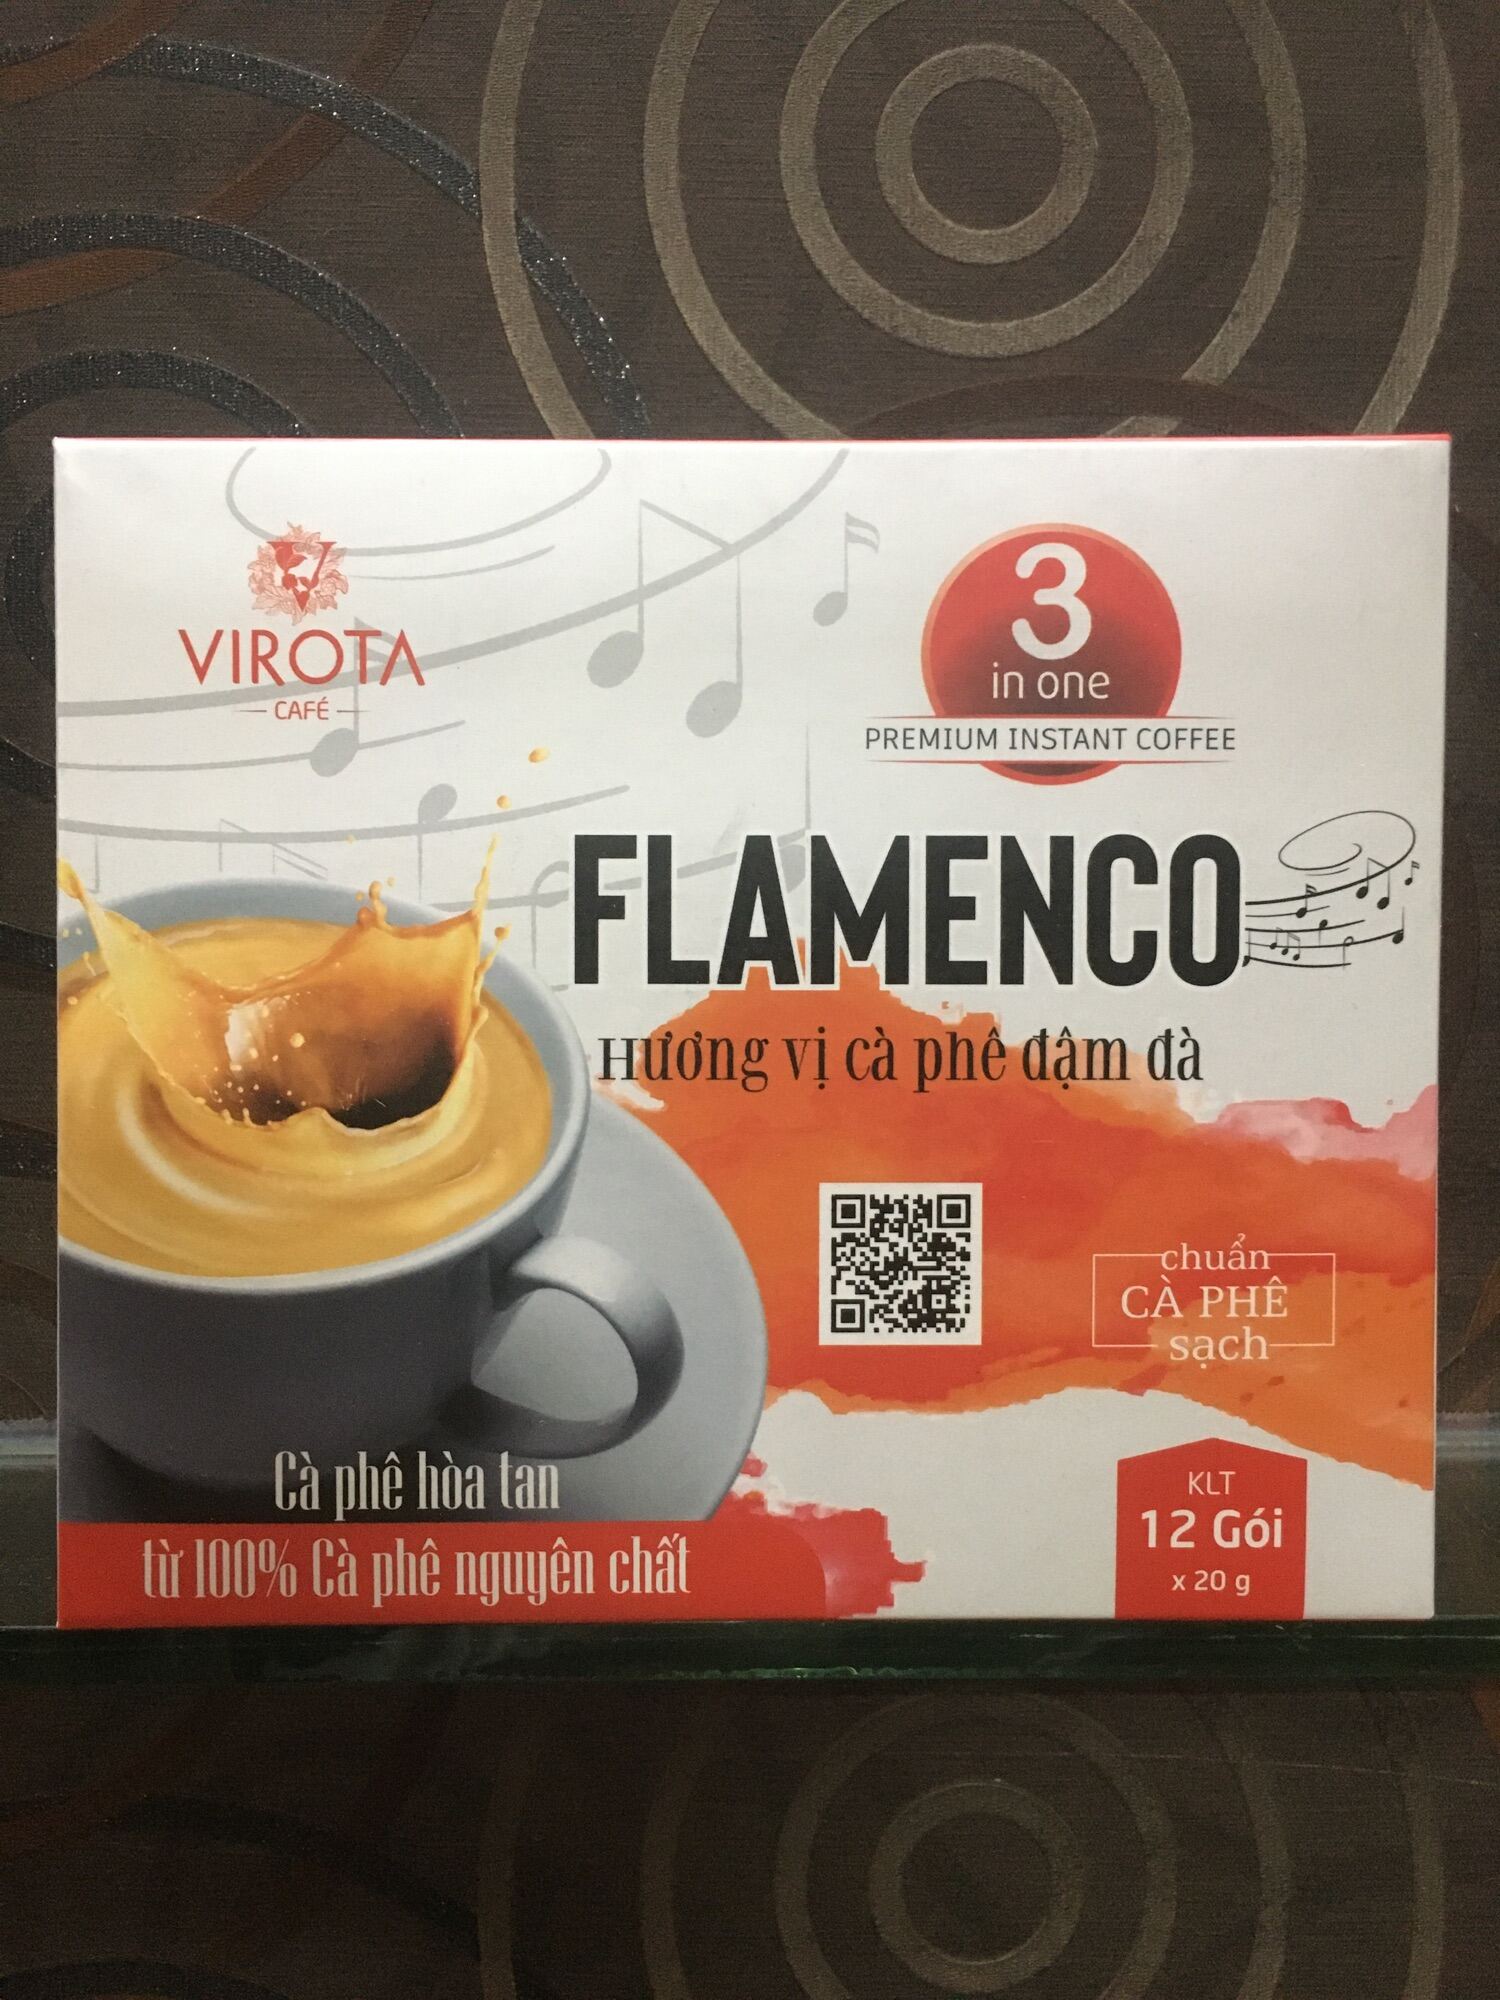 Cafe hoà tan từ 100% cafe nguyên chất hương vị cafe đậm đà flamengo của